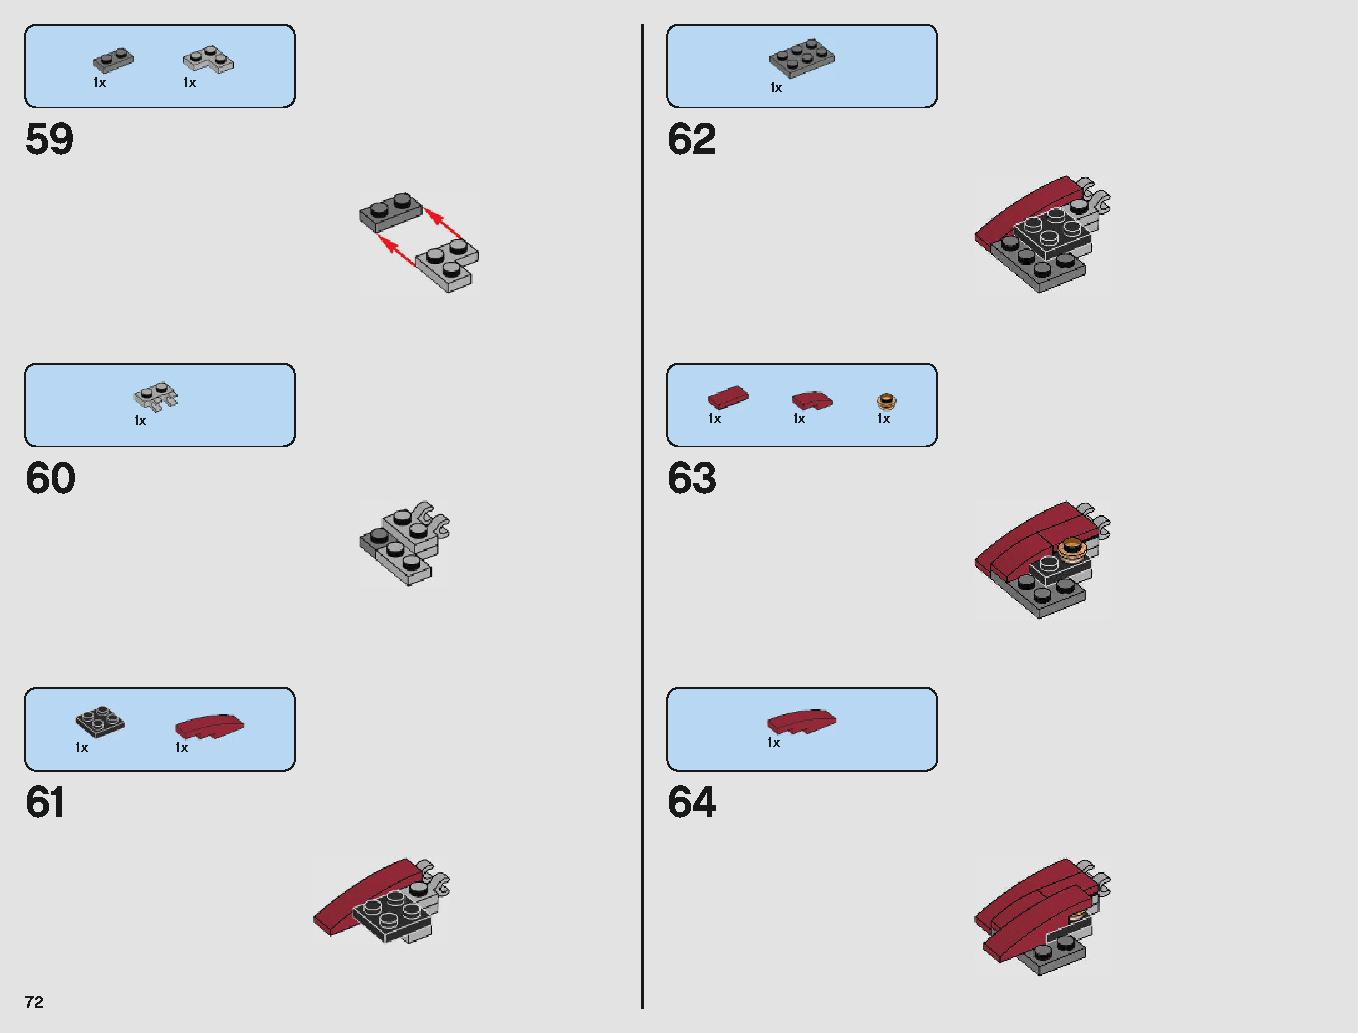 クラウド・シティ 75222 レゴの商品情報 レゴの説明書・組立方法 72 page